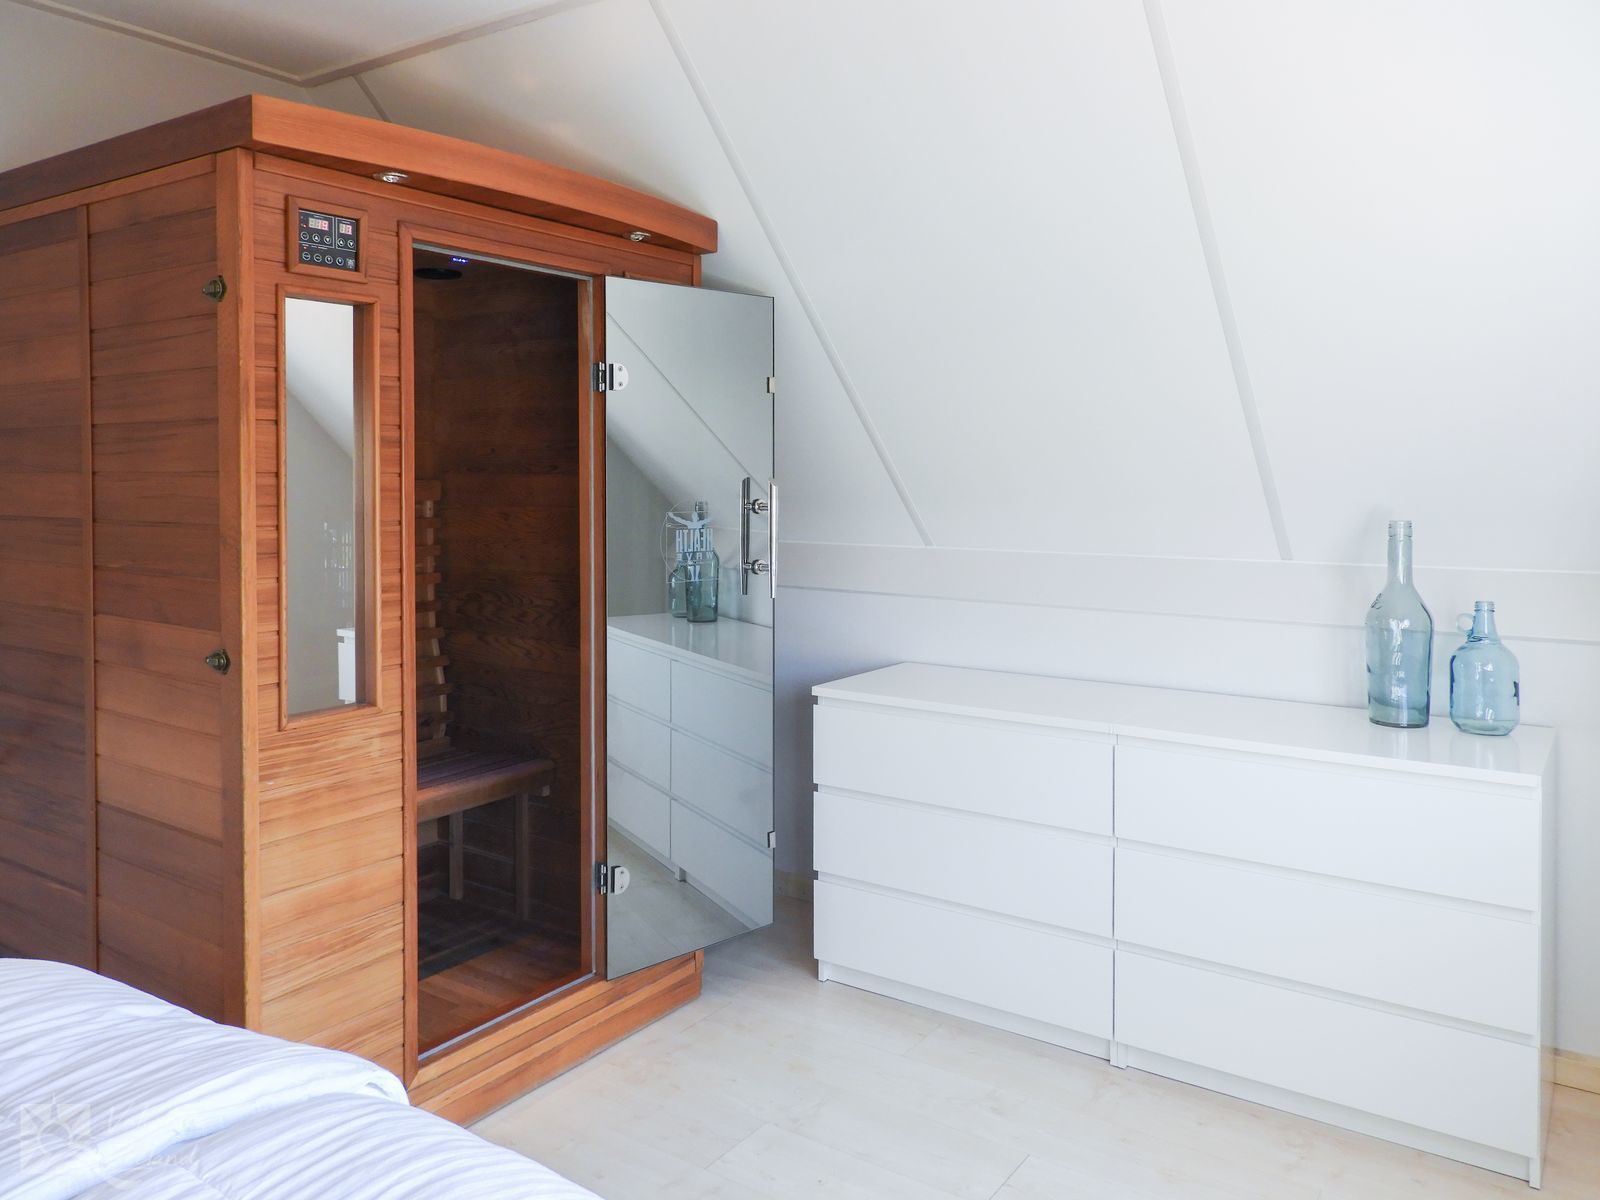 Top 5 vakantiehuizen met sauna, jacuzzi en hottub in Zeeland